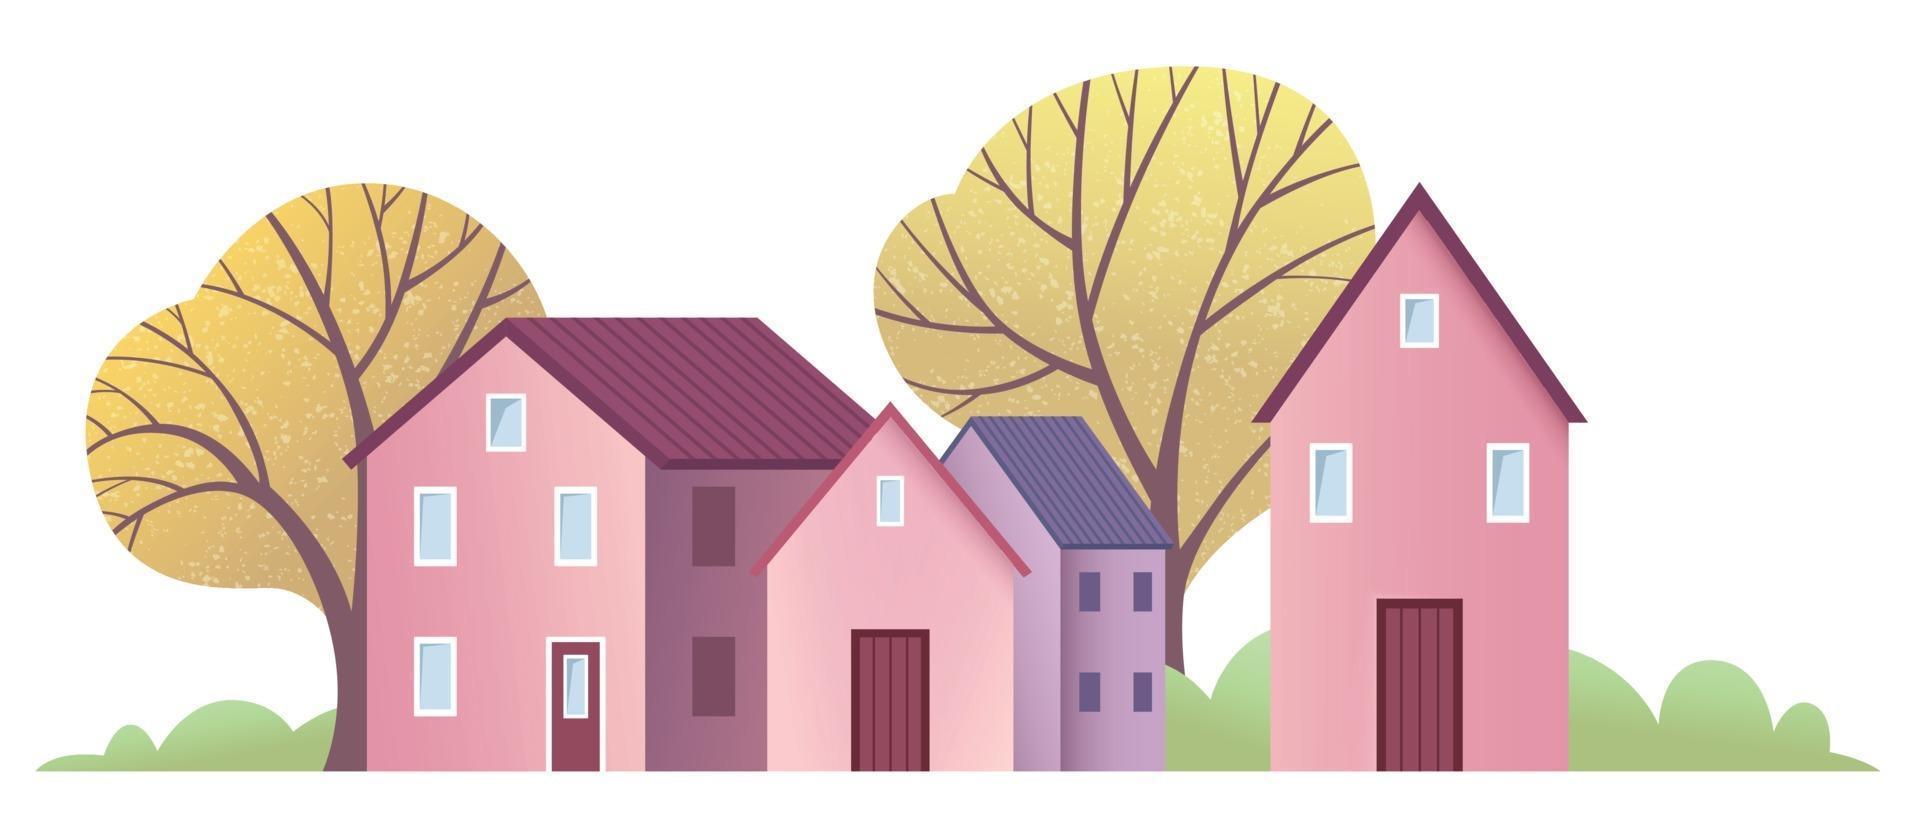 klein stadje met schattige roze en paarse huizen met herfstbomen vector